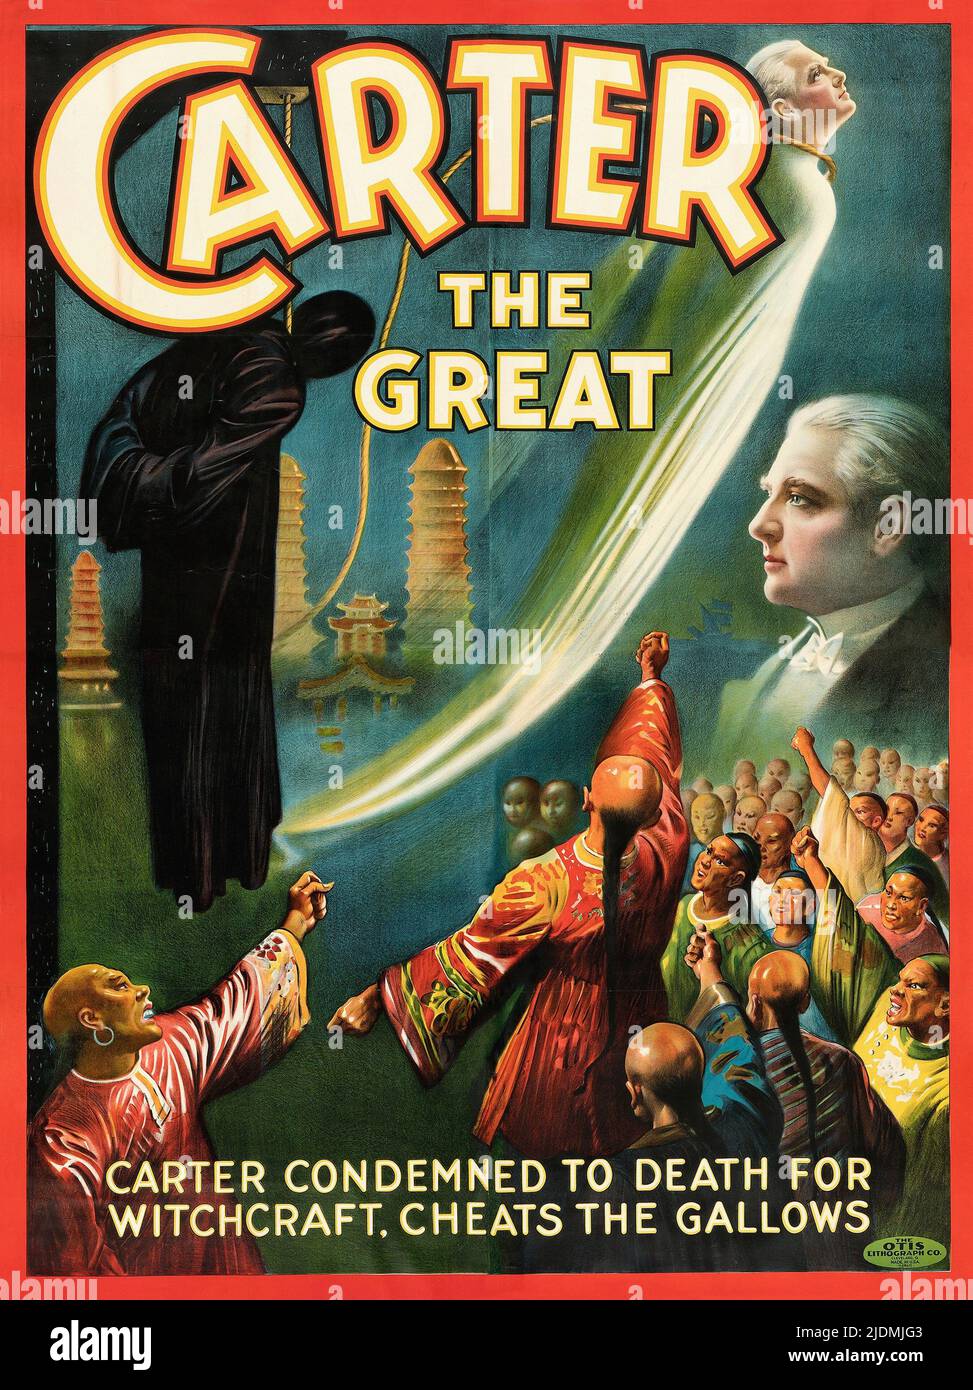 Vintage 1920s Magier Poster für Carter der große. Carter wegen Hexerei zum Tode verurteilt. Cheats den Galgen Stockfoto